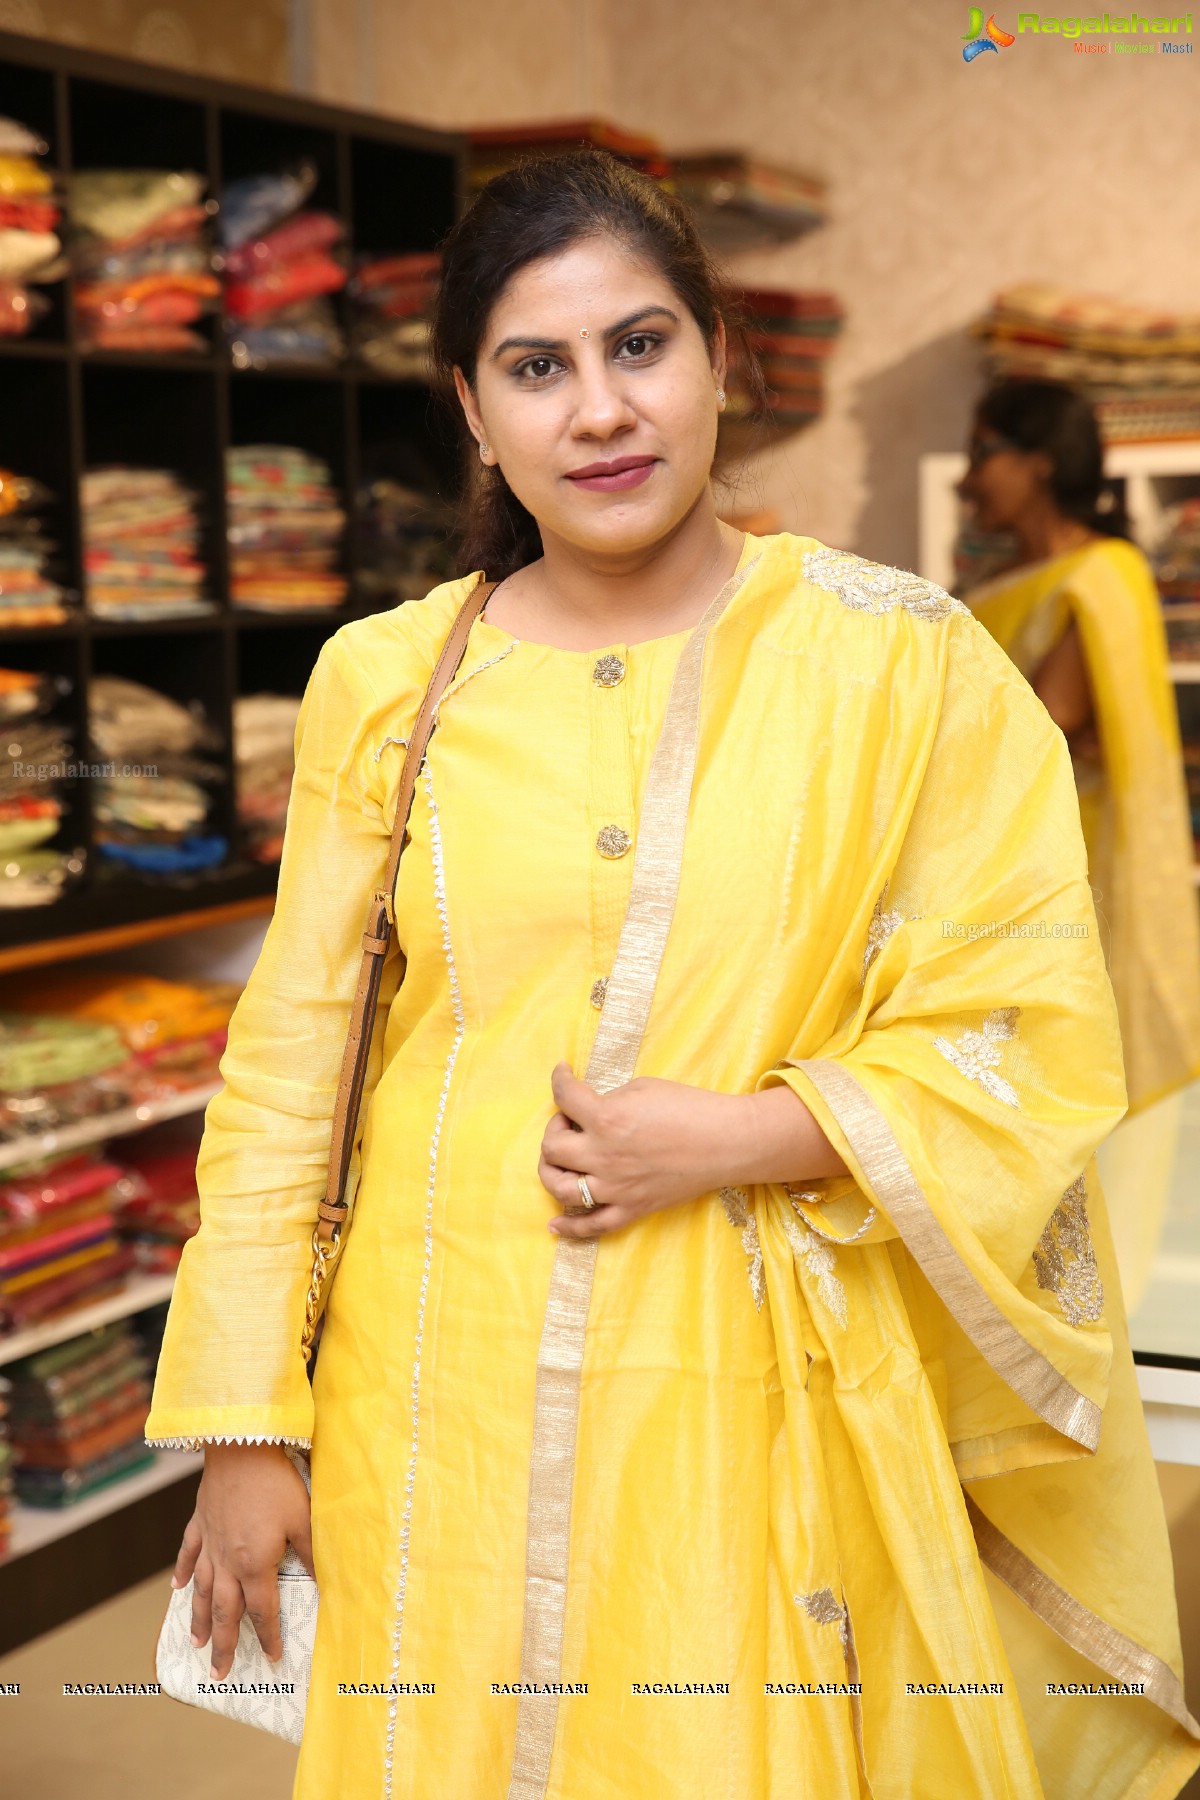 Kamalaalaya Vastranidhi Gets a Golden Flourish at Jubilee Hills, Hyderabad